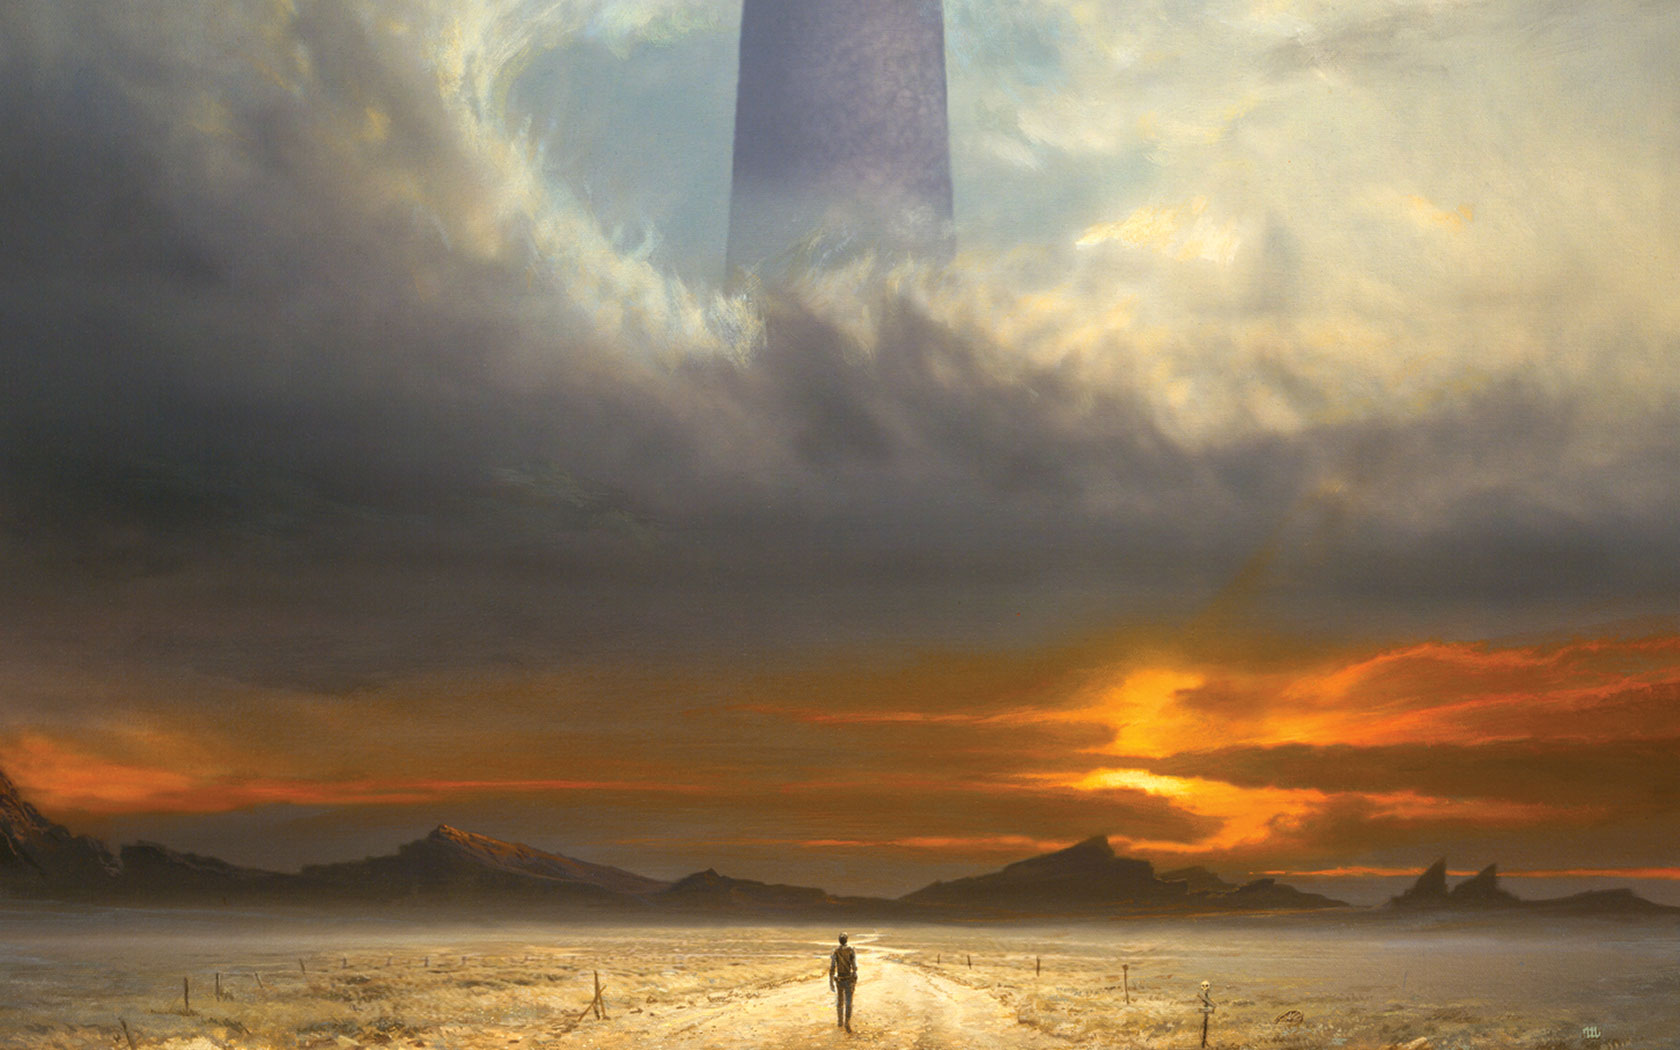 Mời xem trailer The Dark Tower: "ngọn tháp chống trời" chuyển thể từ truyện của Stephen King